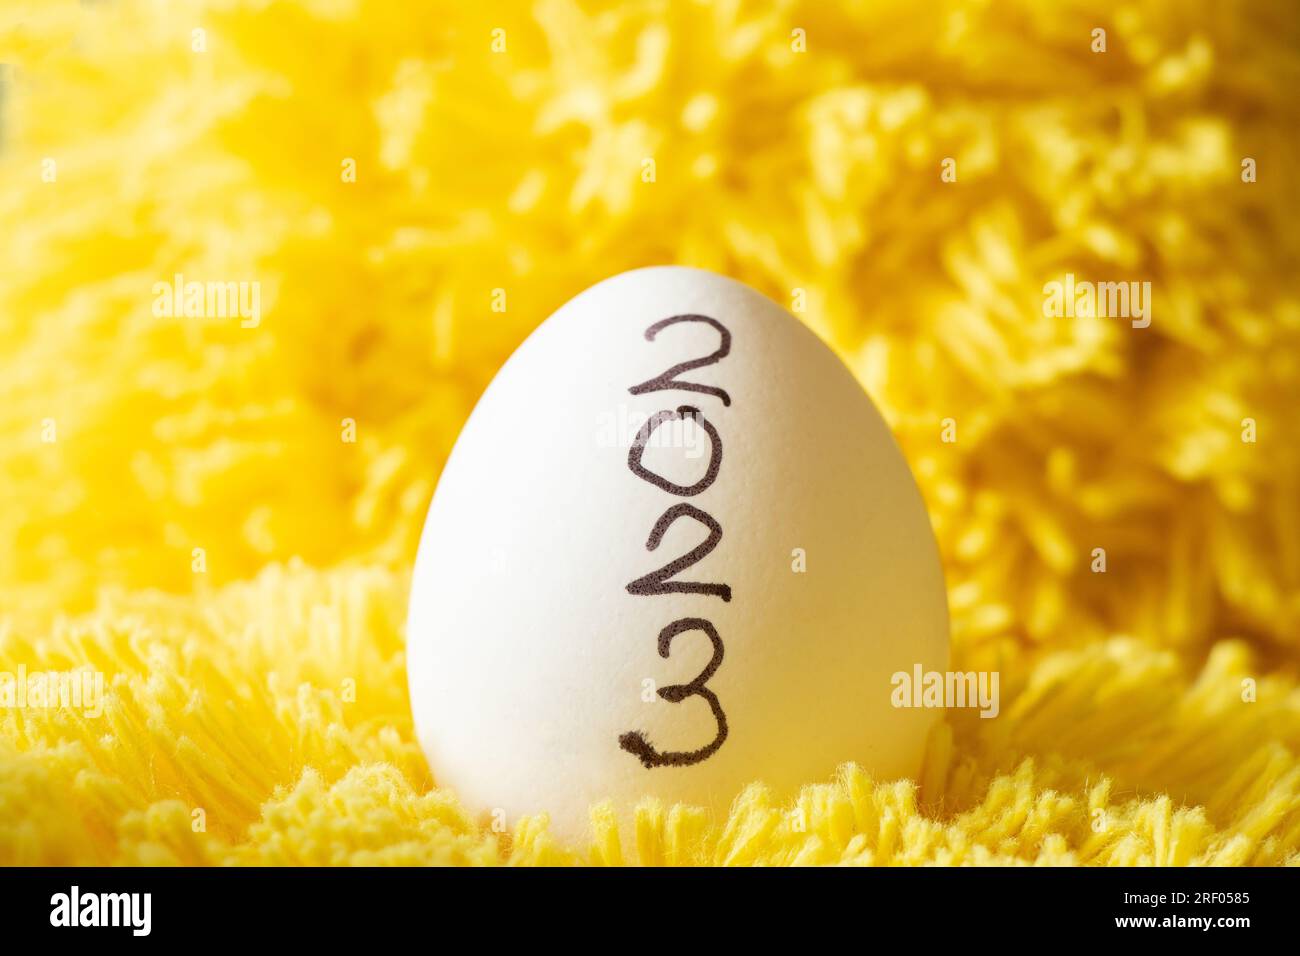 2023 è scritto su un uovo di gallina bianco che si erge su uno sfondo giallo morbido di fili, uovo di gallina Foto Stock